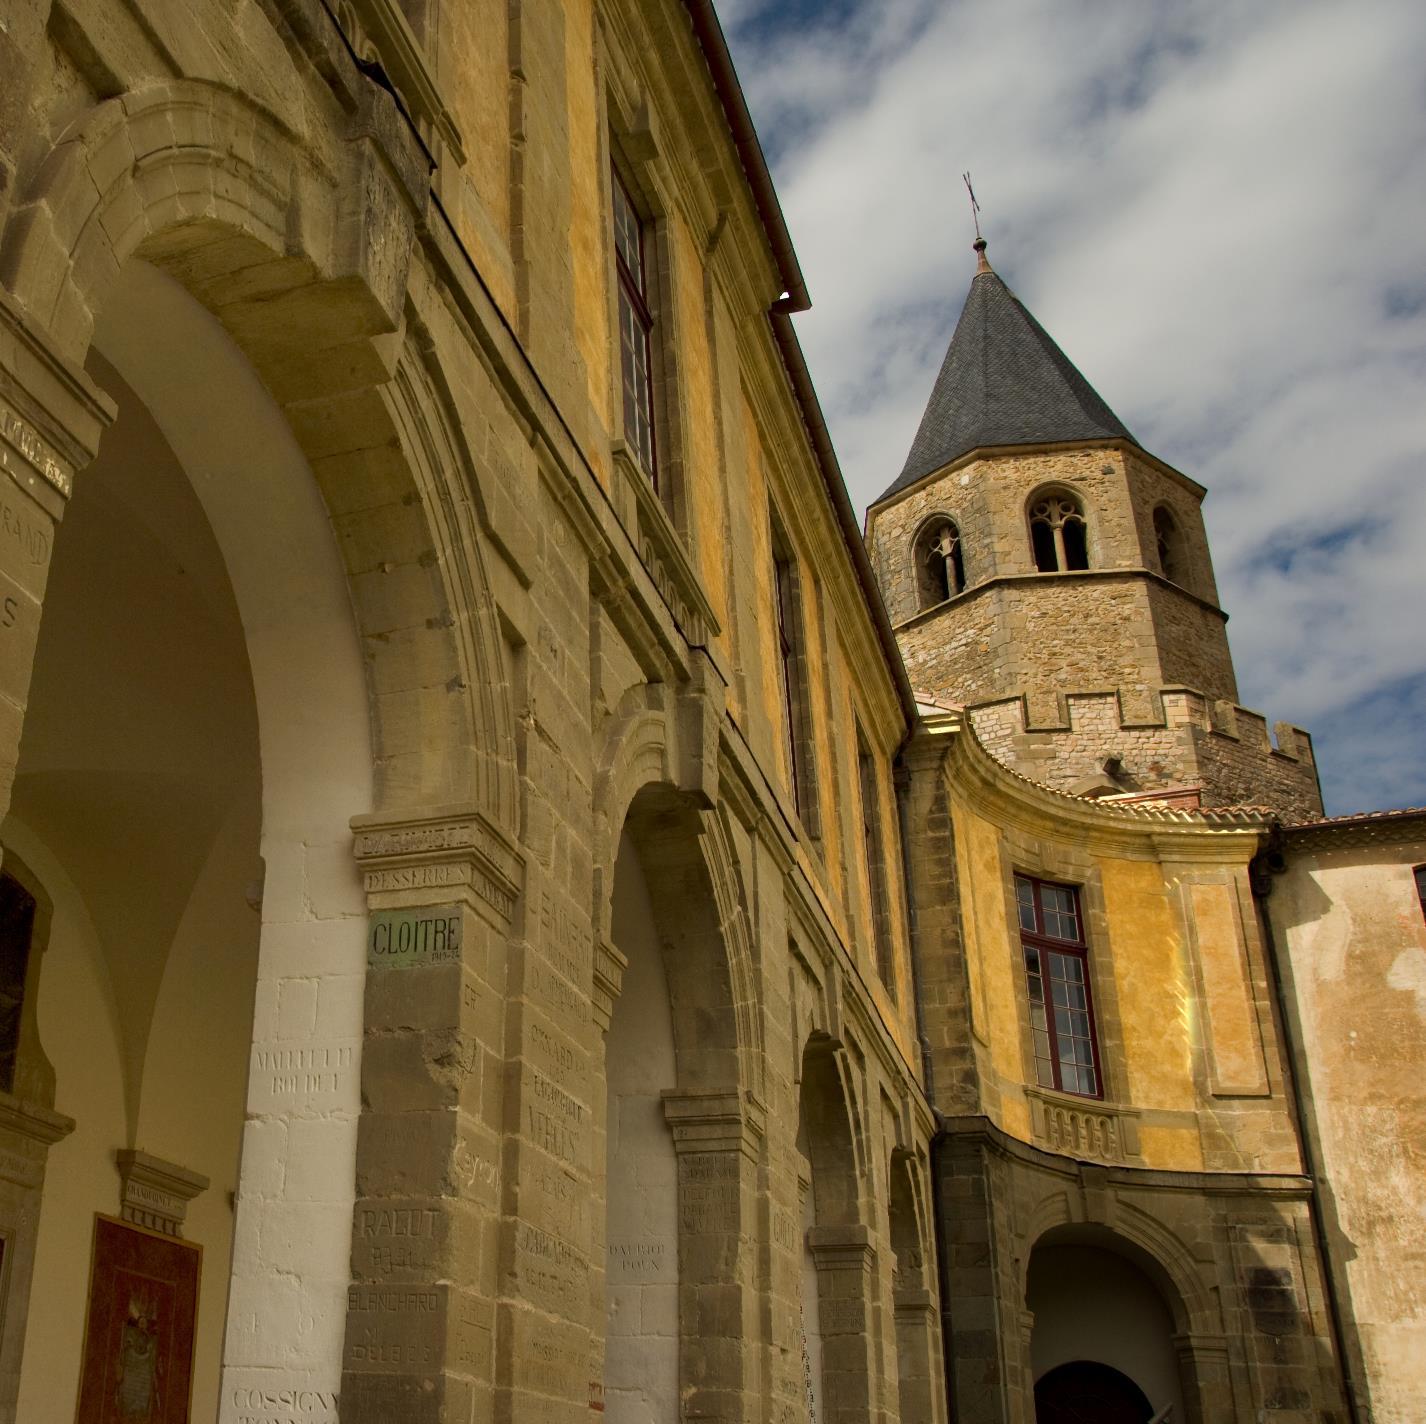 Une Abbaye-bénédictine dès le VIIIe siècle et un haut lieu de l'enseignement dès la fin du XVIIIe jusqu'en 1991. Aujourd'hui un site pluriculturel